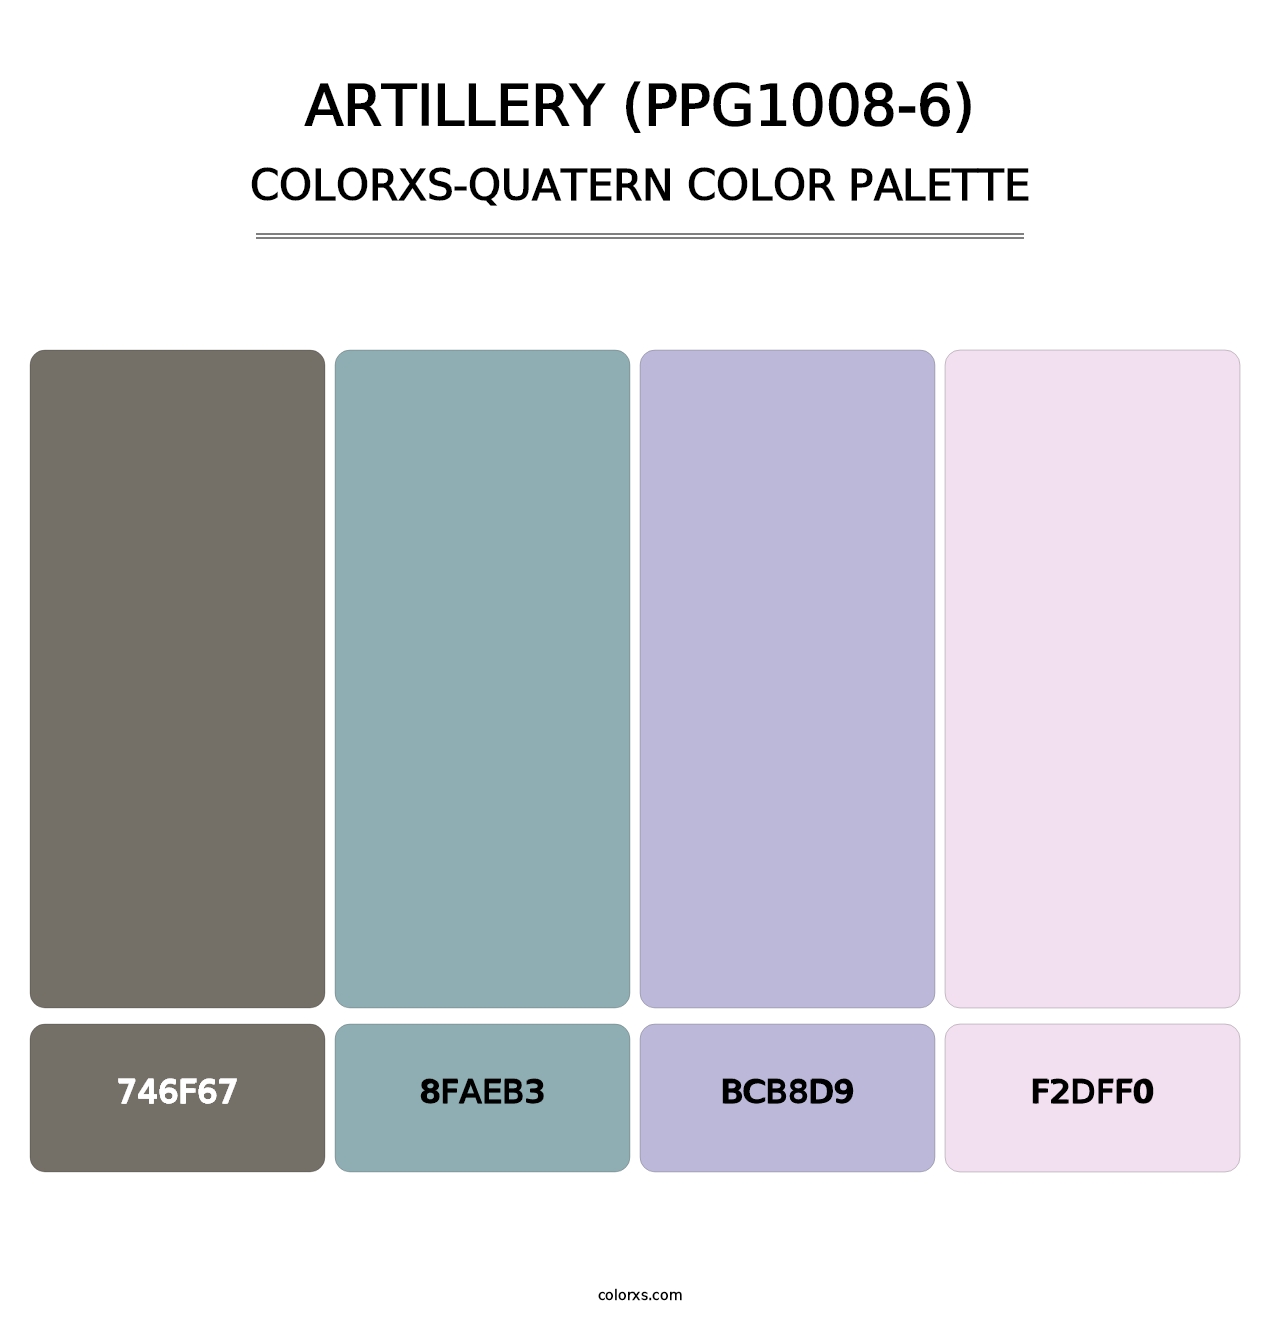 Artillery (PPG1008-6) - Colorxs Quatern Palette